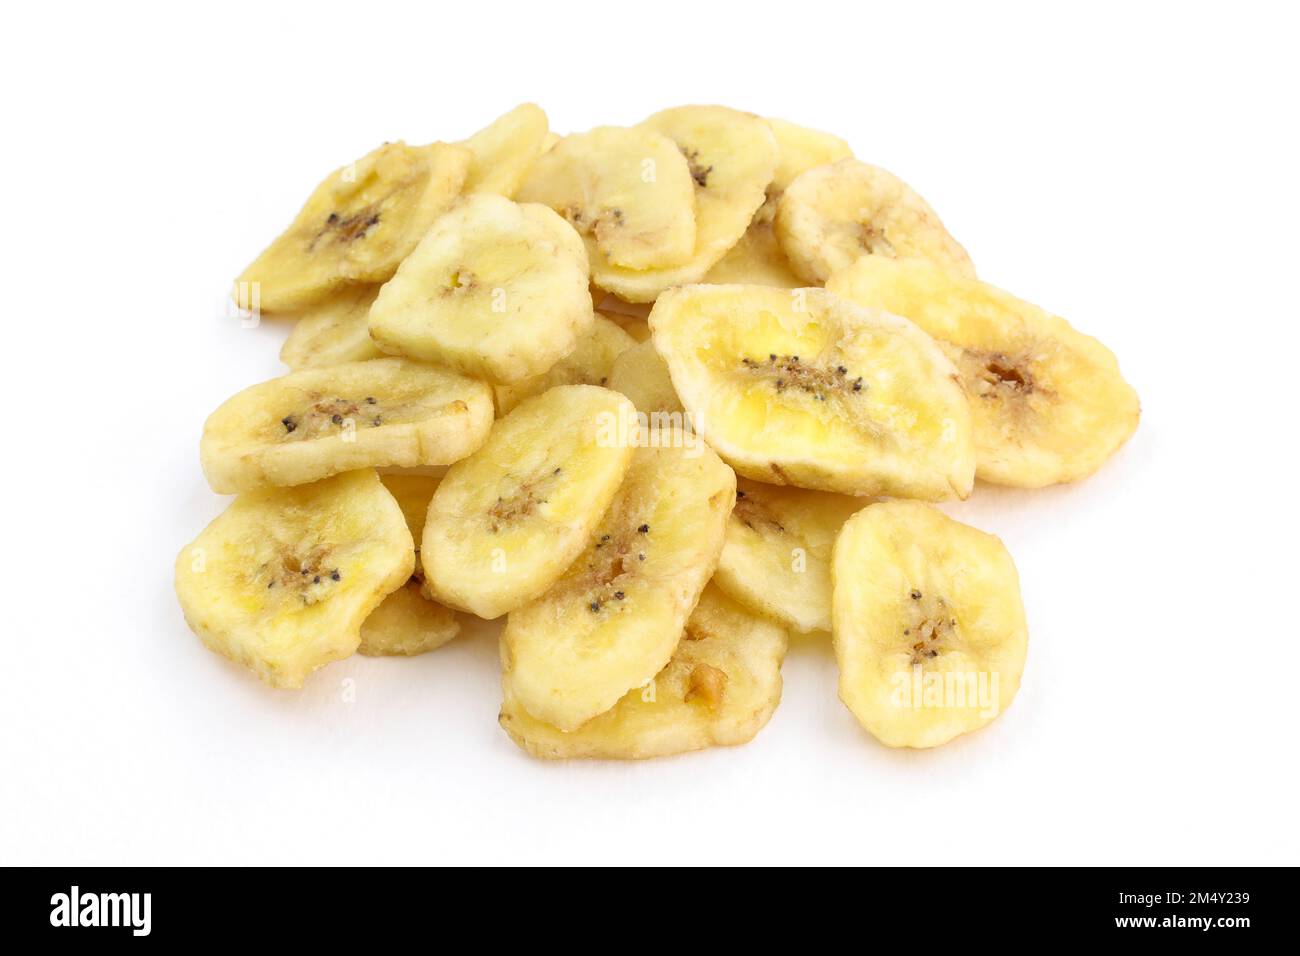 Mucchio di banane secche su fondo bianco. Snack dolci fette di banana secca. primo piano di patatine di banana essiccate organiche. Foto Stock